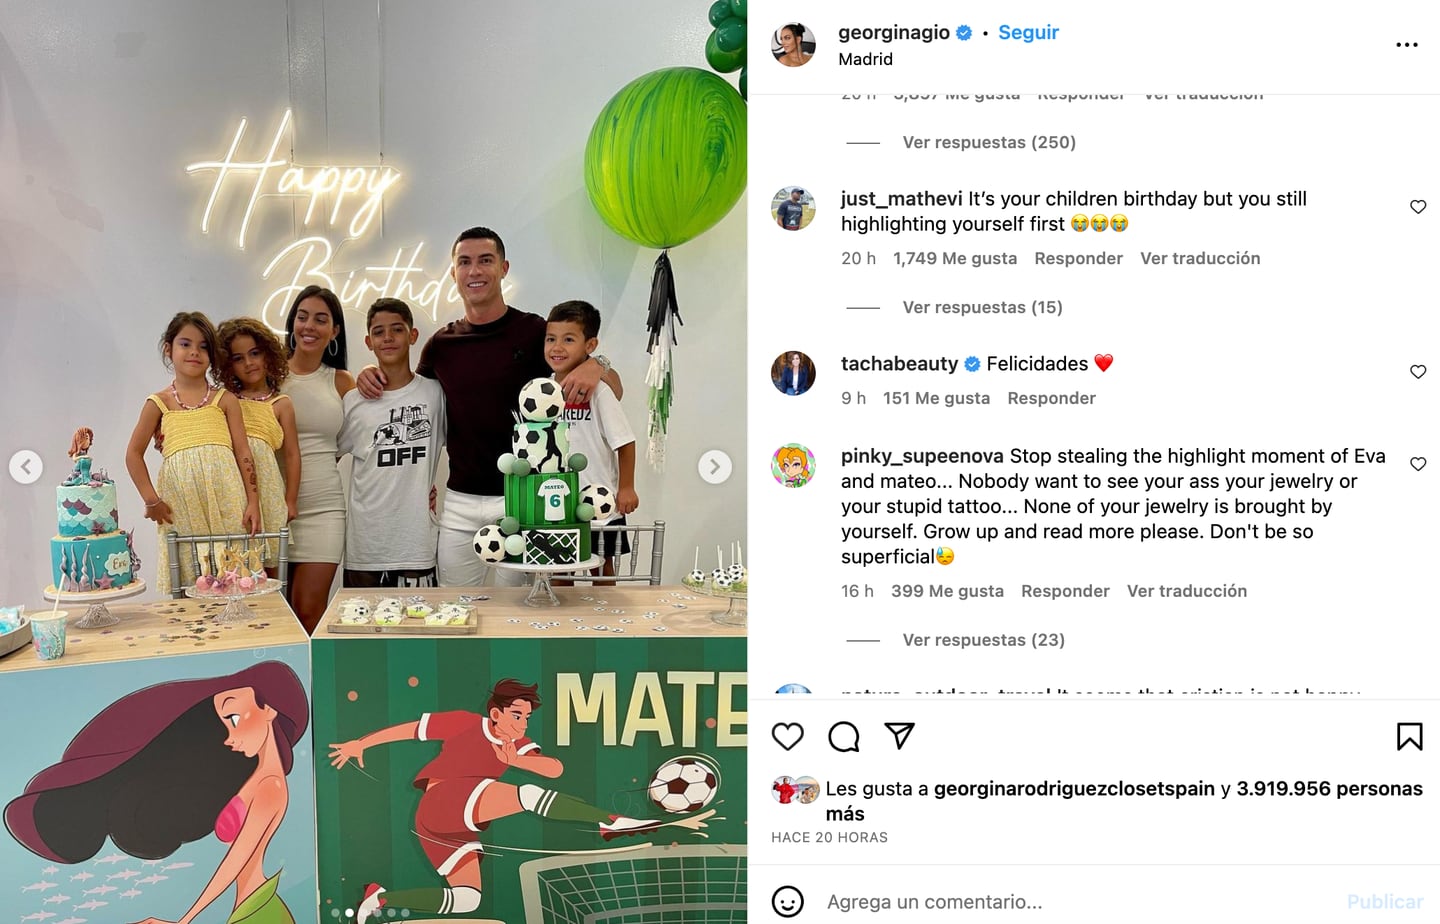 Georgina Rodríguez y Cristiano Ronaldo celebran el cumpleaños de sus mellizos Eva y Mateo